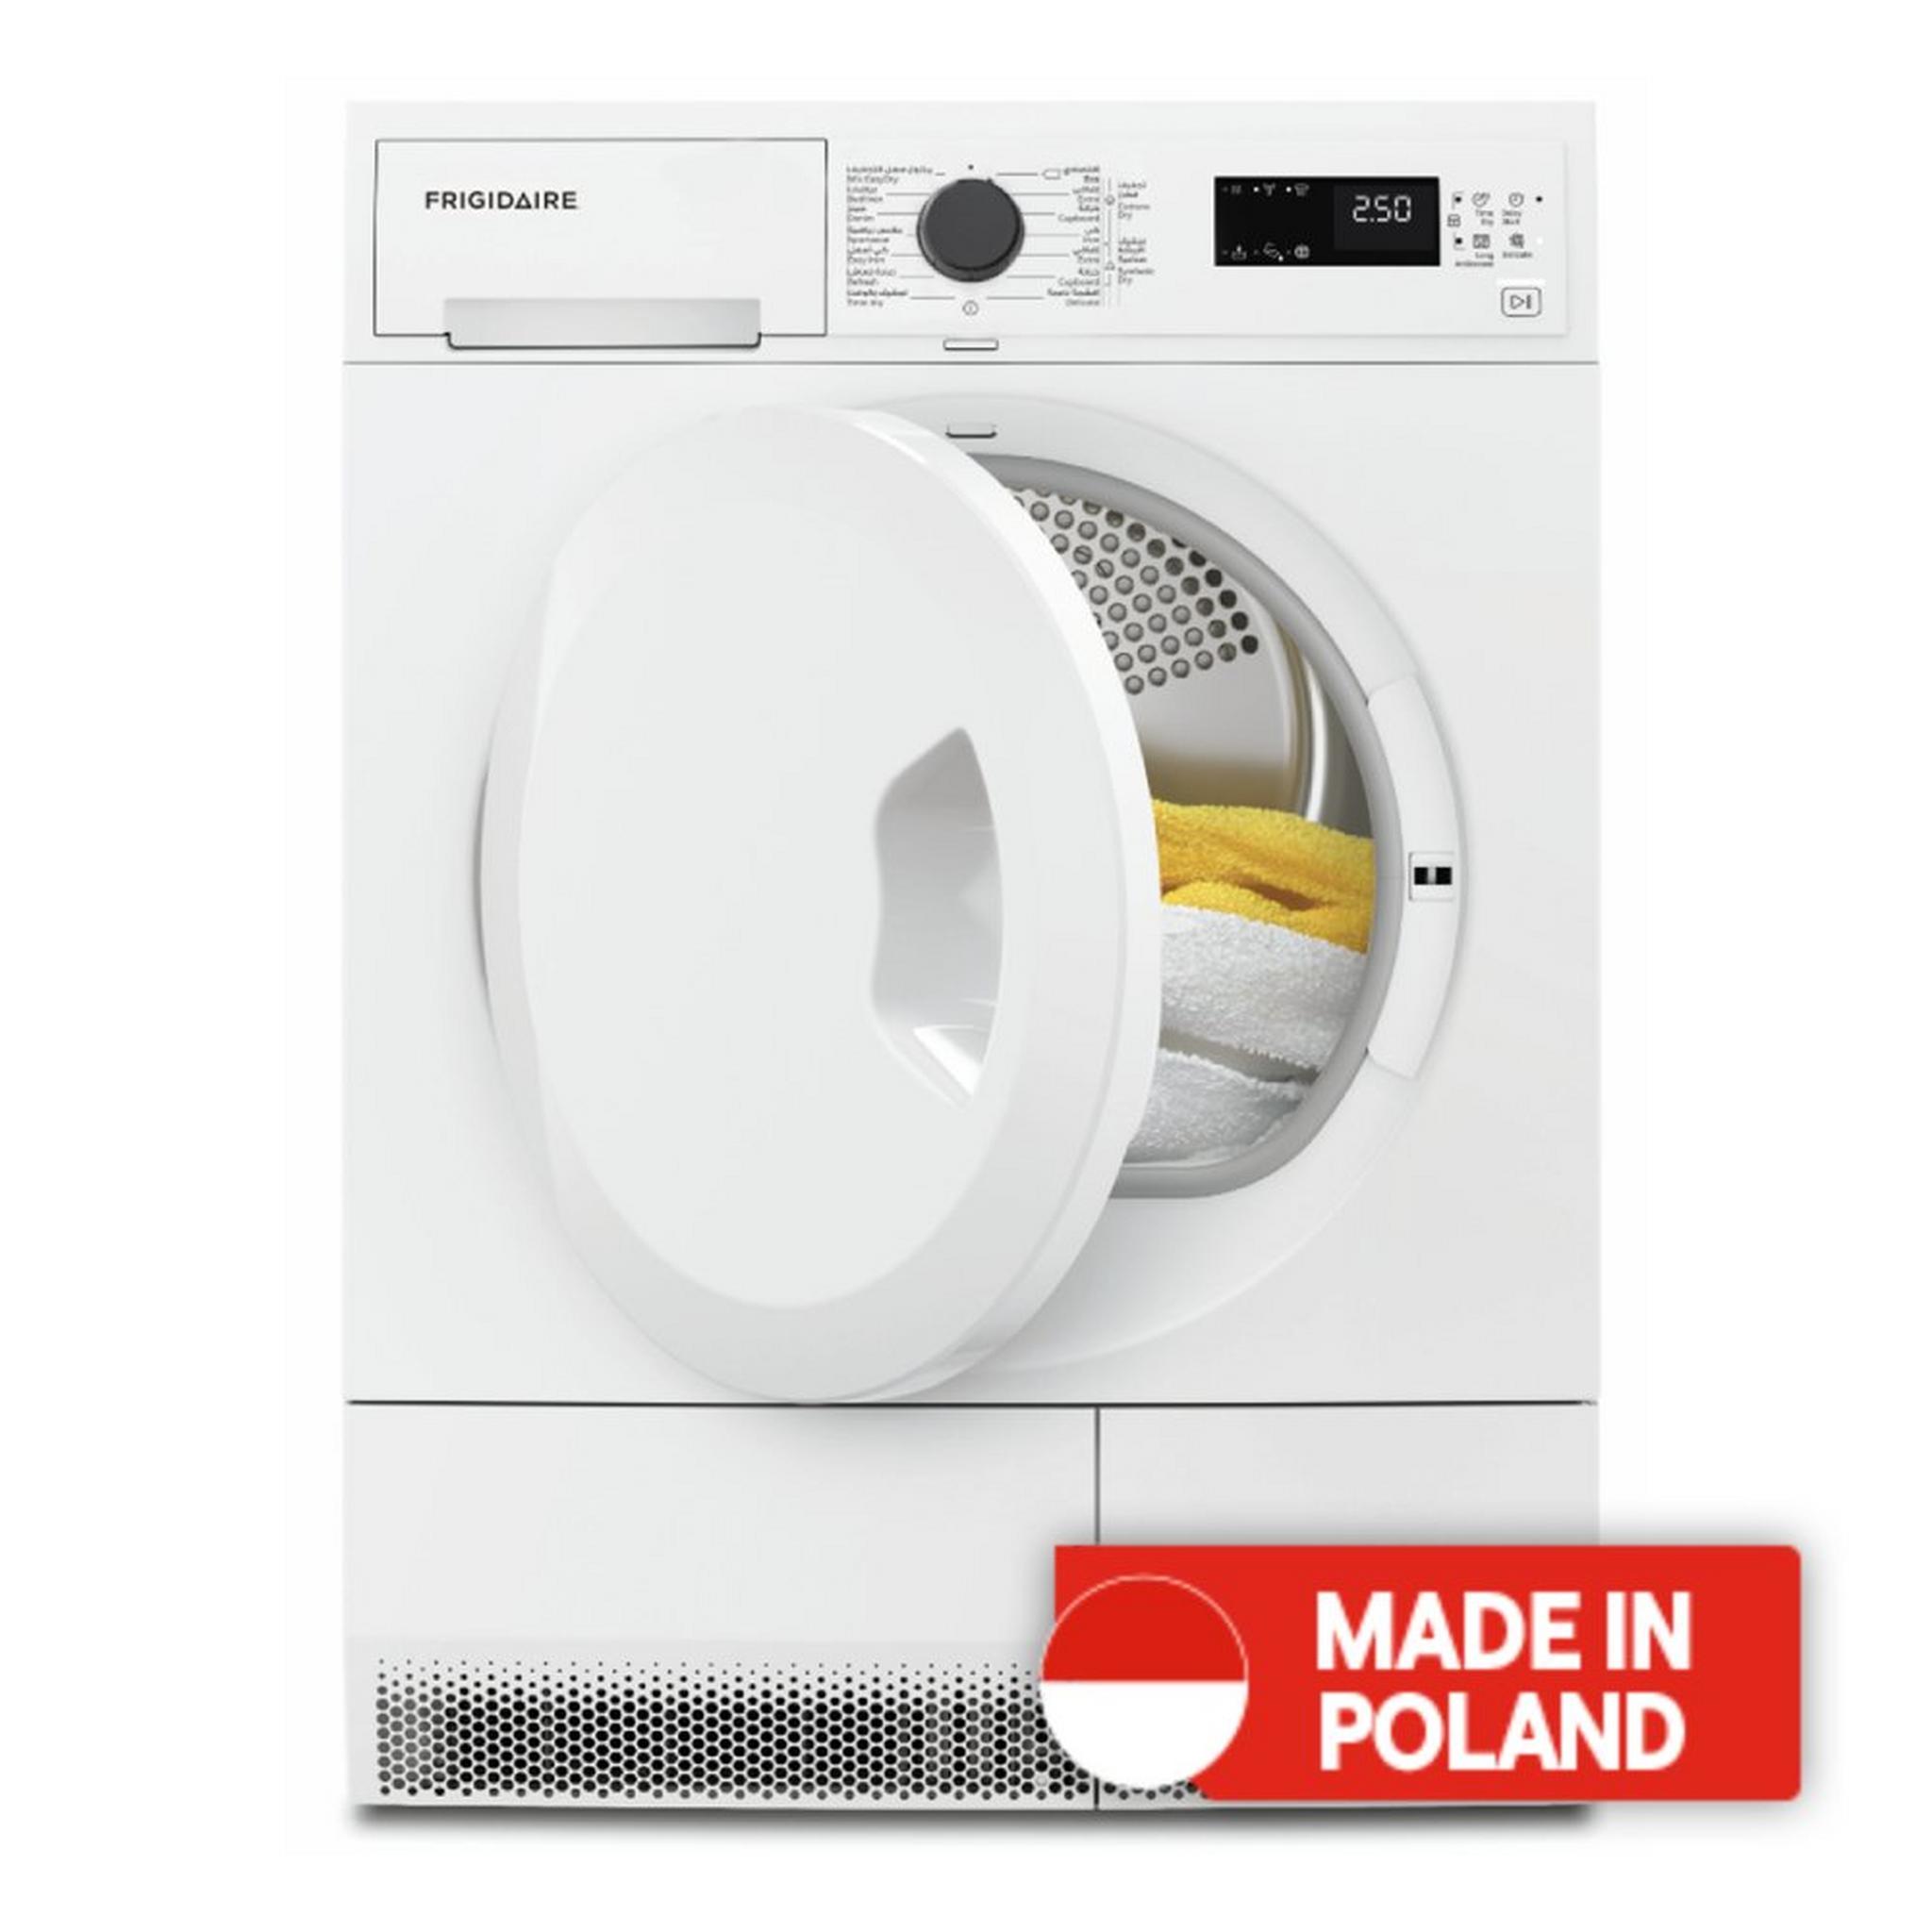 Frigidaire Condenser Dryer, 8KG, FDCB284B - White